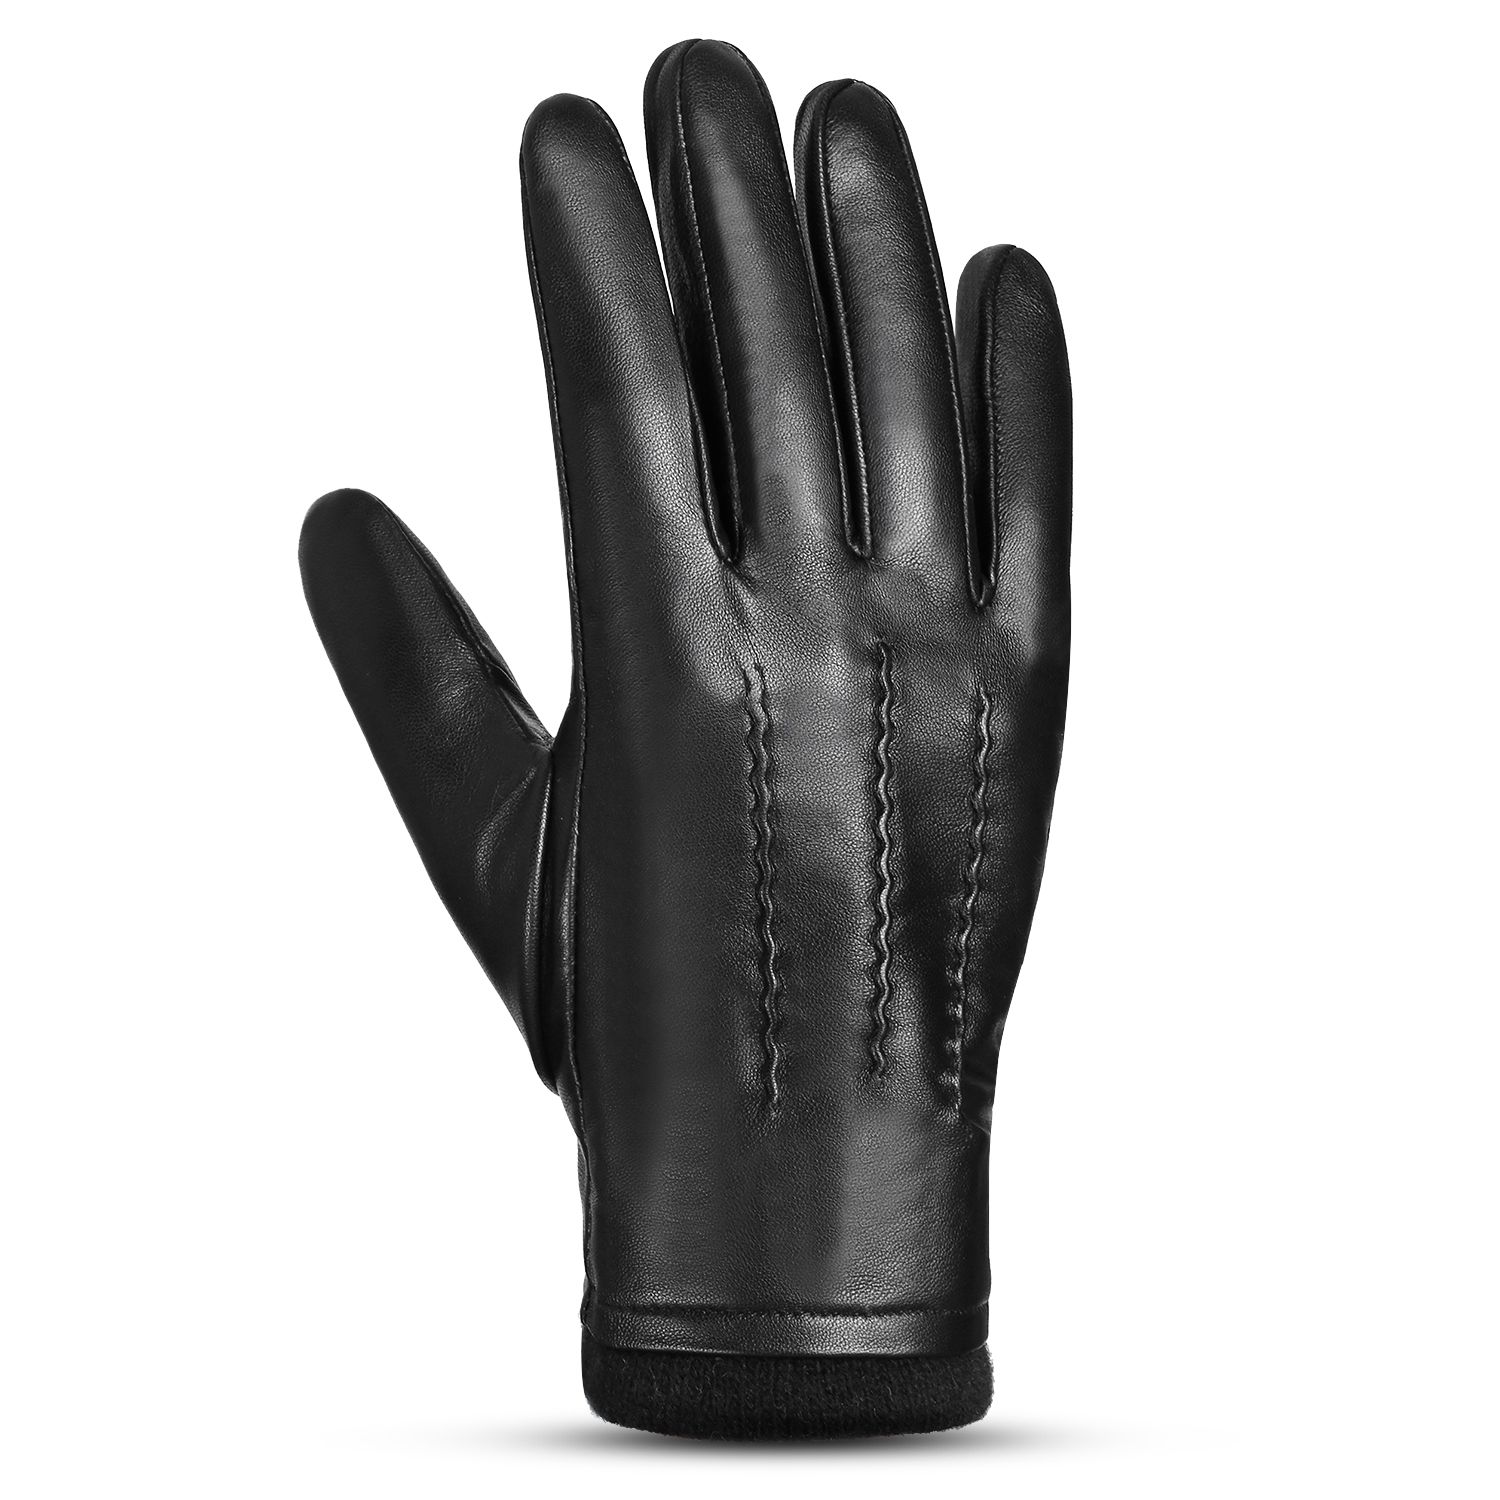 Men Sheepskin Leather Gloves Outdoor Sport Warm Wool Lined - XL